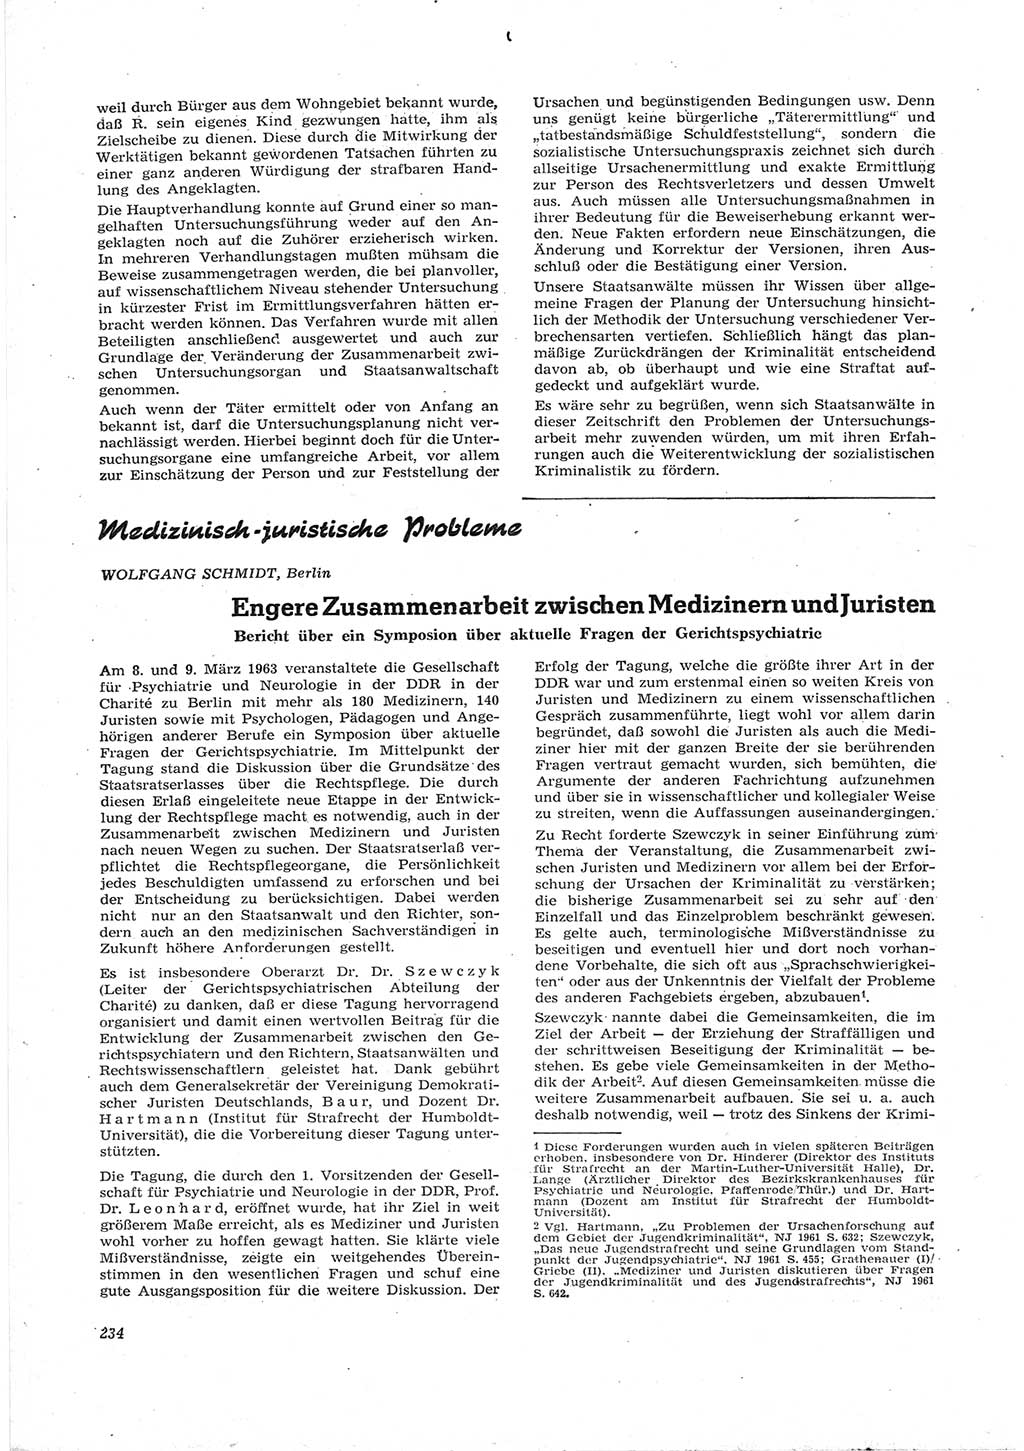 Neue Justiz (NJ), Zeitschrift für Recht und Rechtswissenschaft [Deutsche Demokratische Republik (DDR)], 17. Jahrgang 1963, Seite 234 (NJ DDR 1963, S. 234)